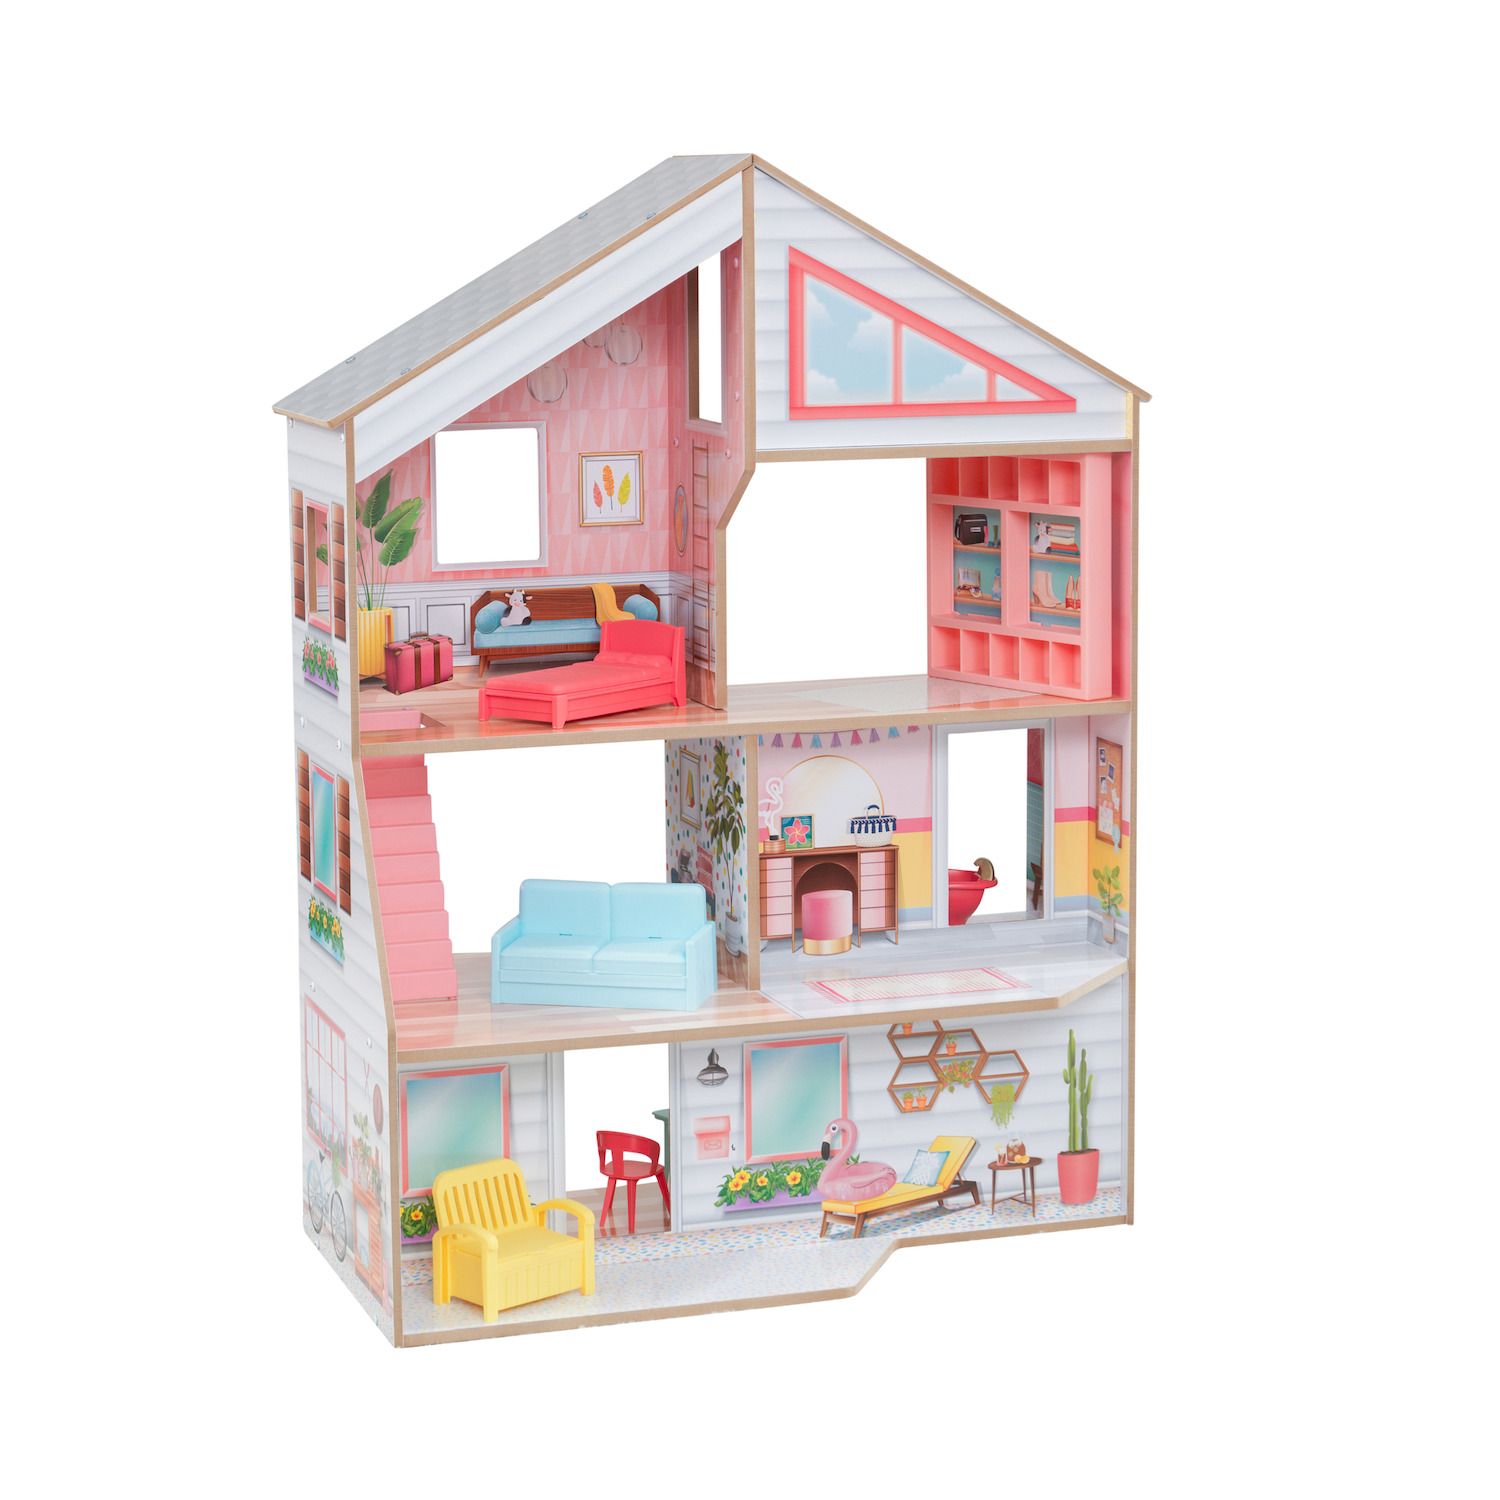 teeny house dollhouse